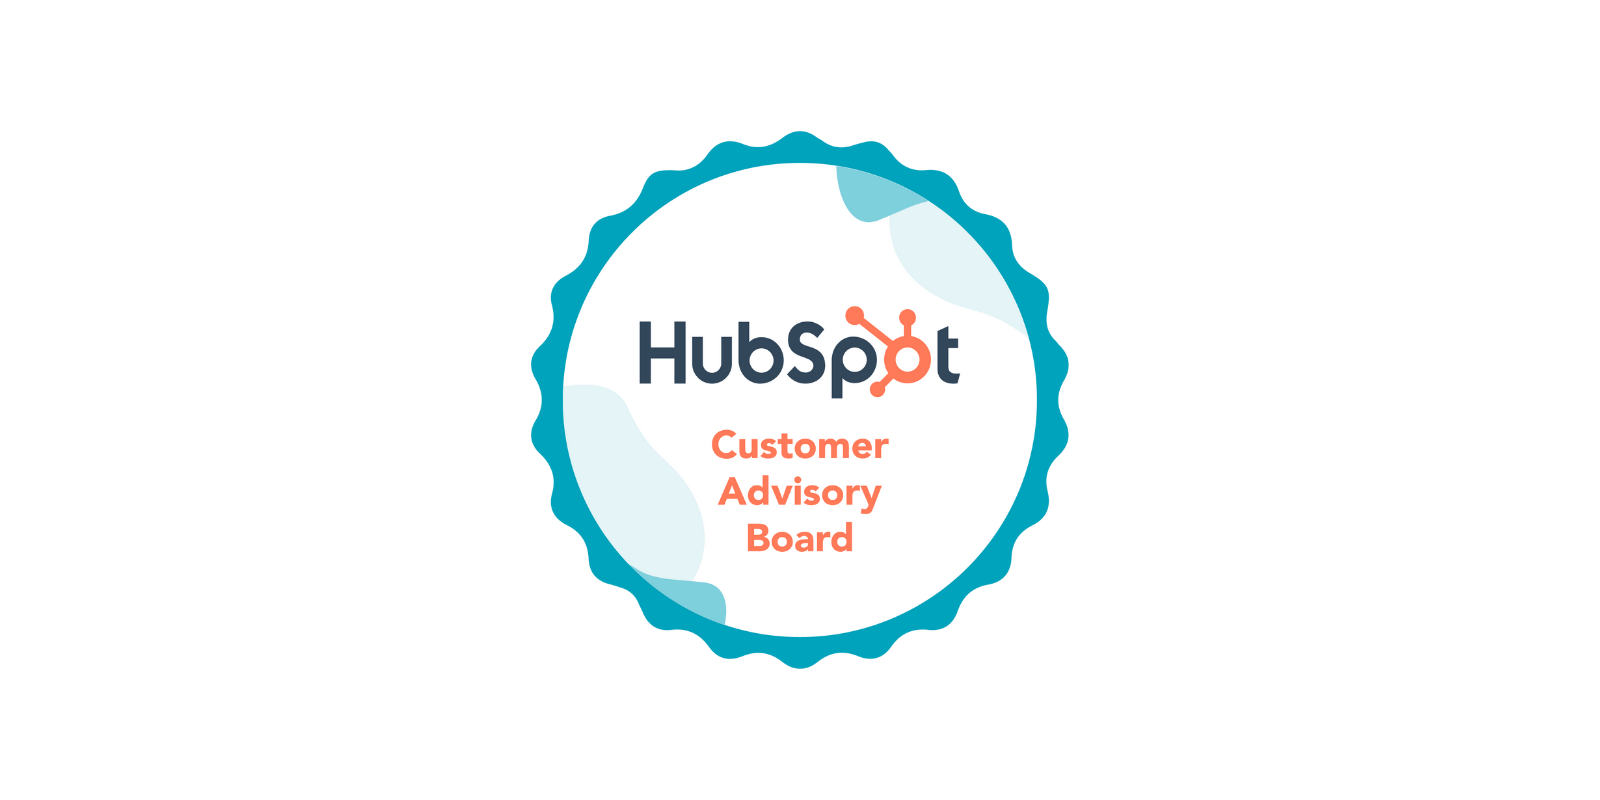 HubSpot Announces 2022 Customer Advisory Board Members